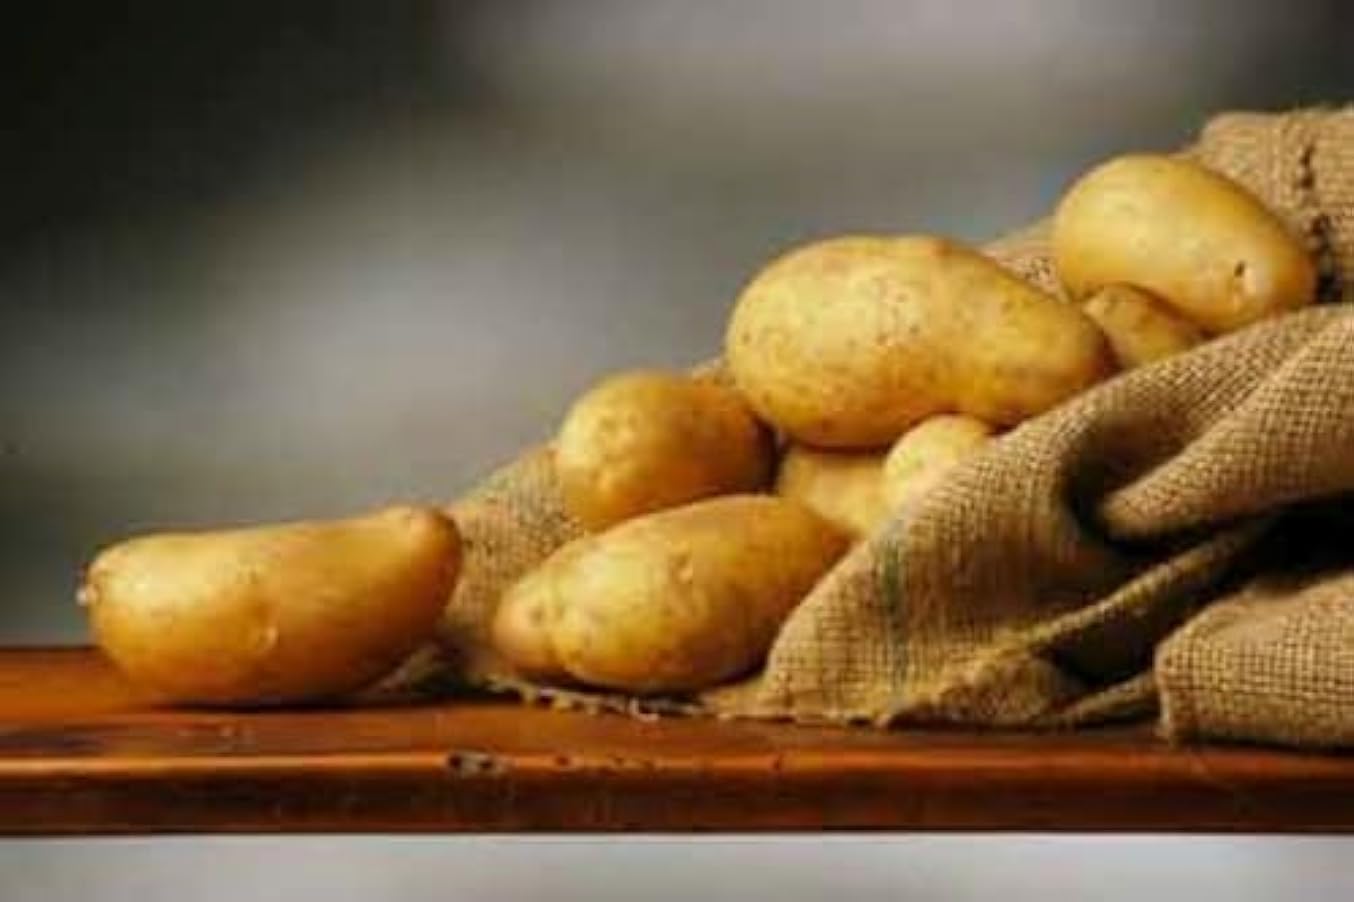 Patate silane IGP kg.17 di PATATE coltivate in Sila Calabria Patate a pasta gialla 743176959